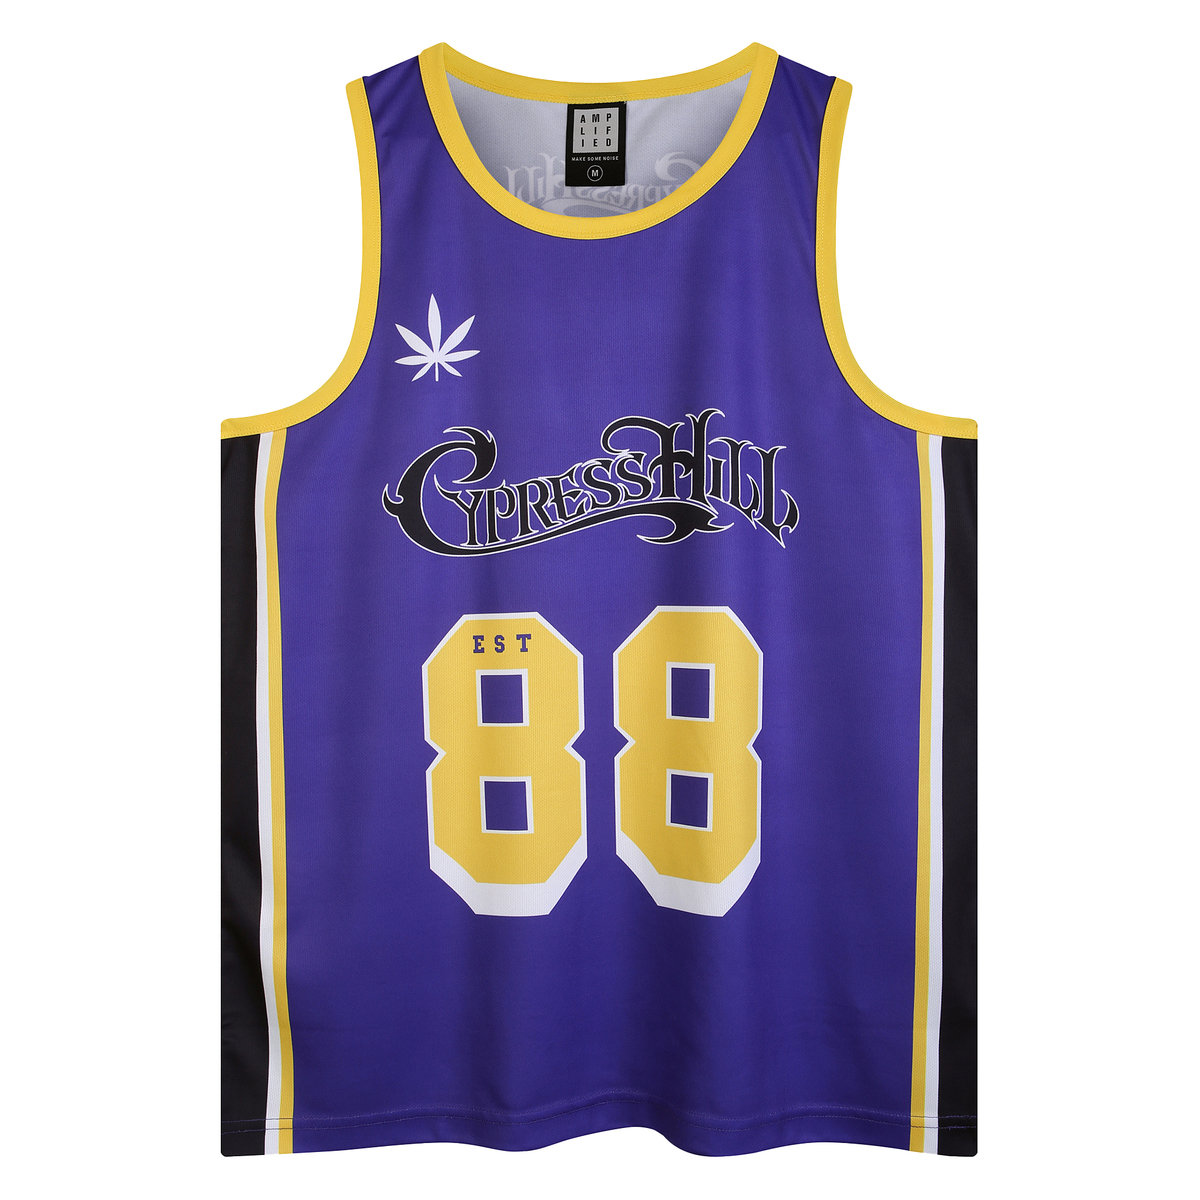 Cypress Hill - Greenthumb BBall Vest